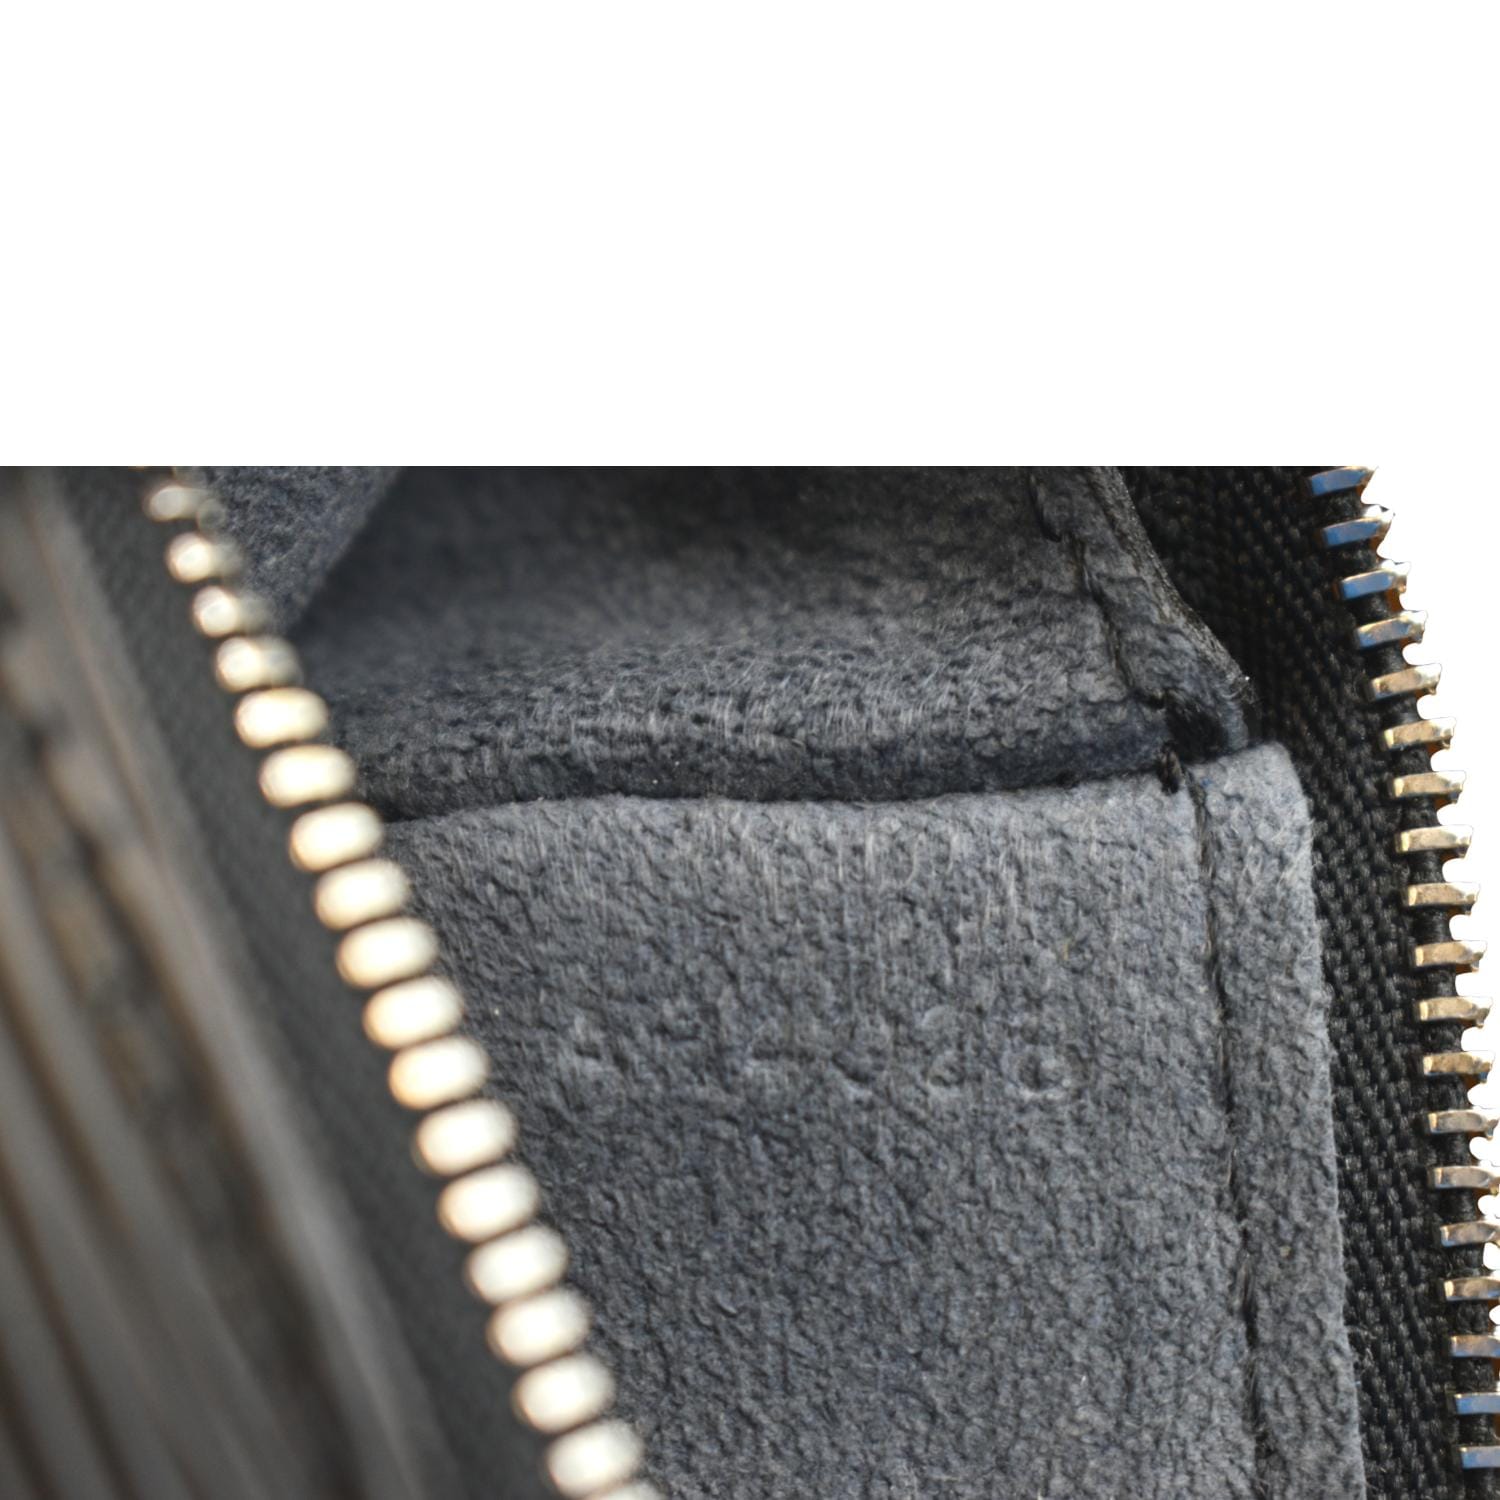 Louis Vuitton Black Epi Leather Pochette Accessoires (Authentic Pre-Owned)  - ShopStyle Shoulder Bags